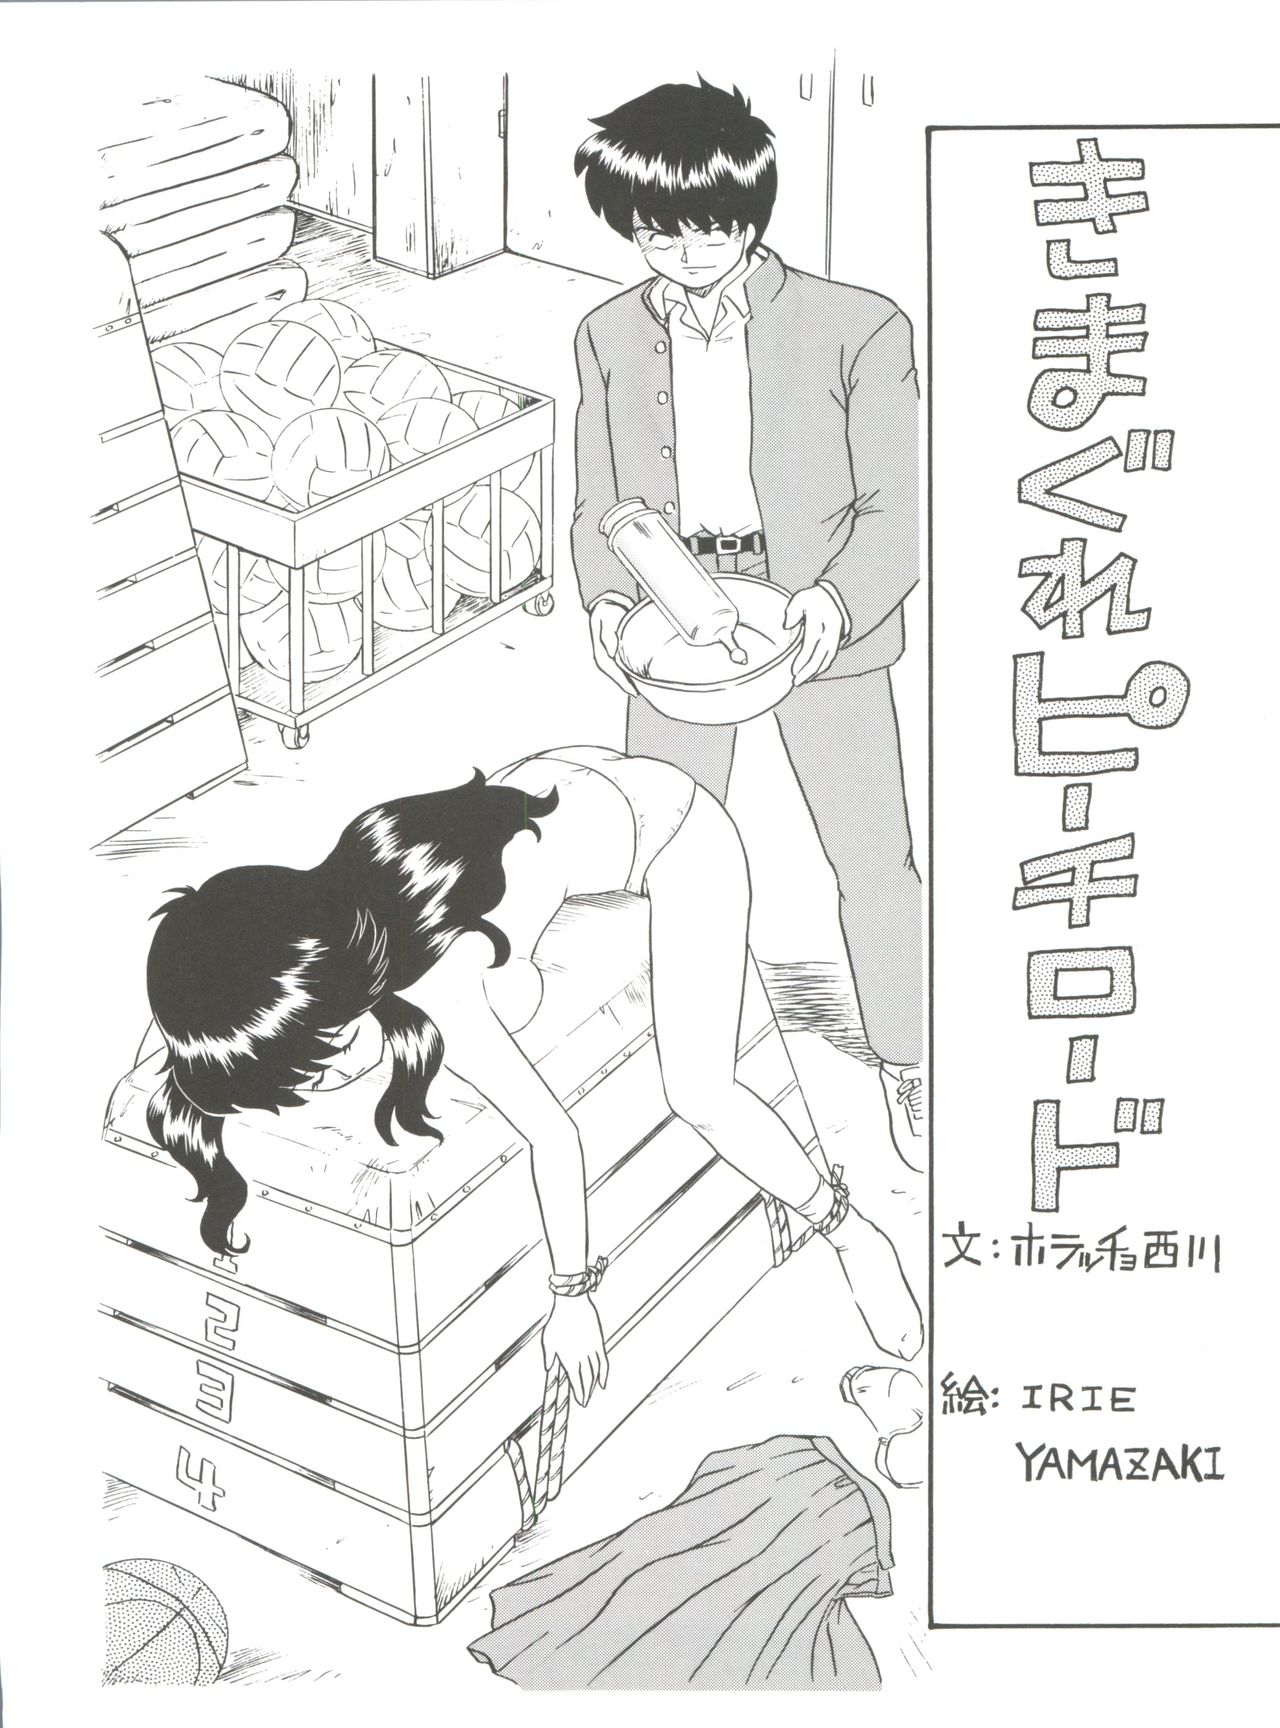 [RAT TAIL (IRIE YAMAZAKI)] しっぽっぽ文庫 きまぐれピーチ・ロード (きまぐれオレンジ☆ロード)